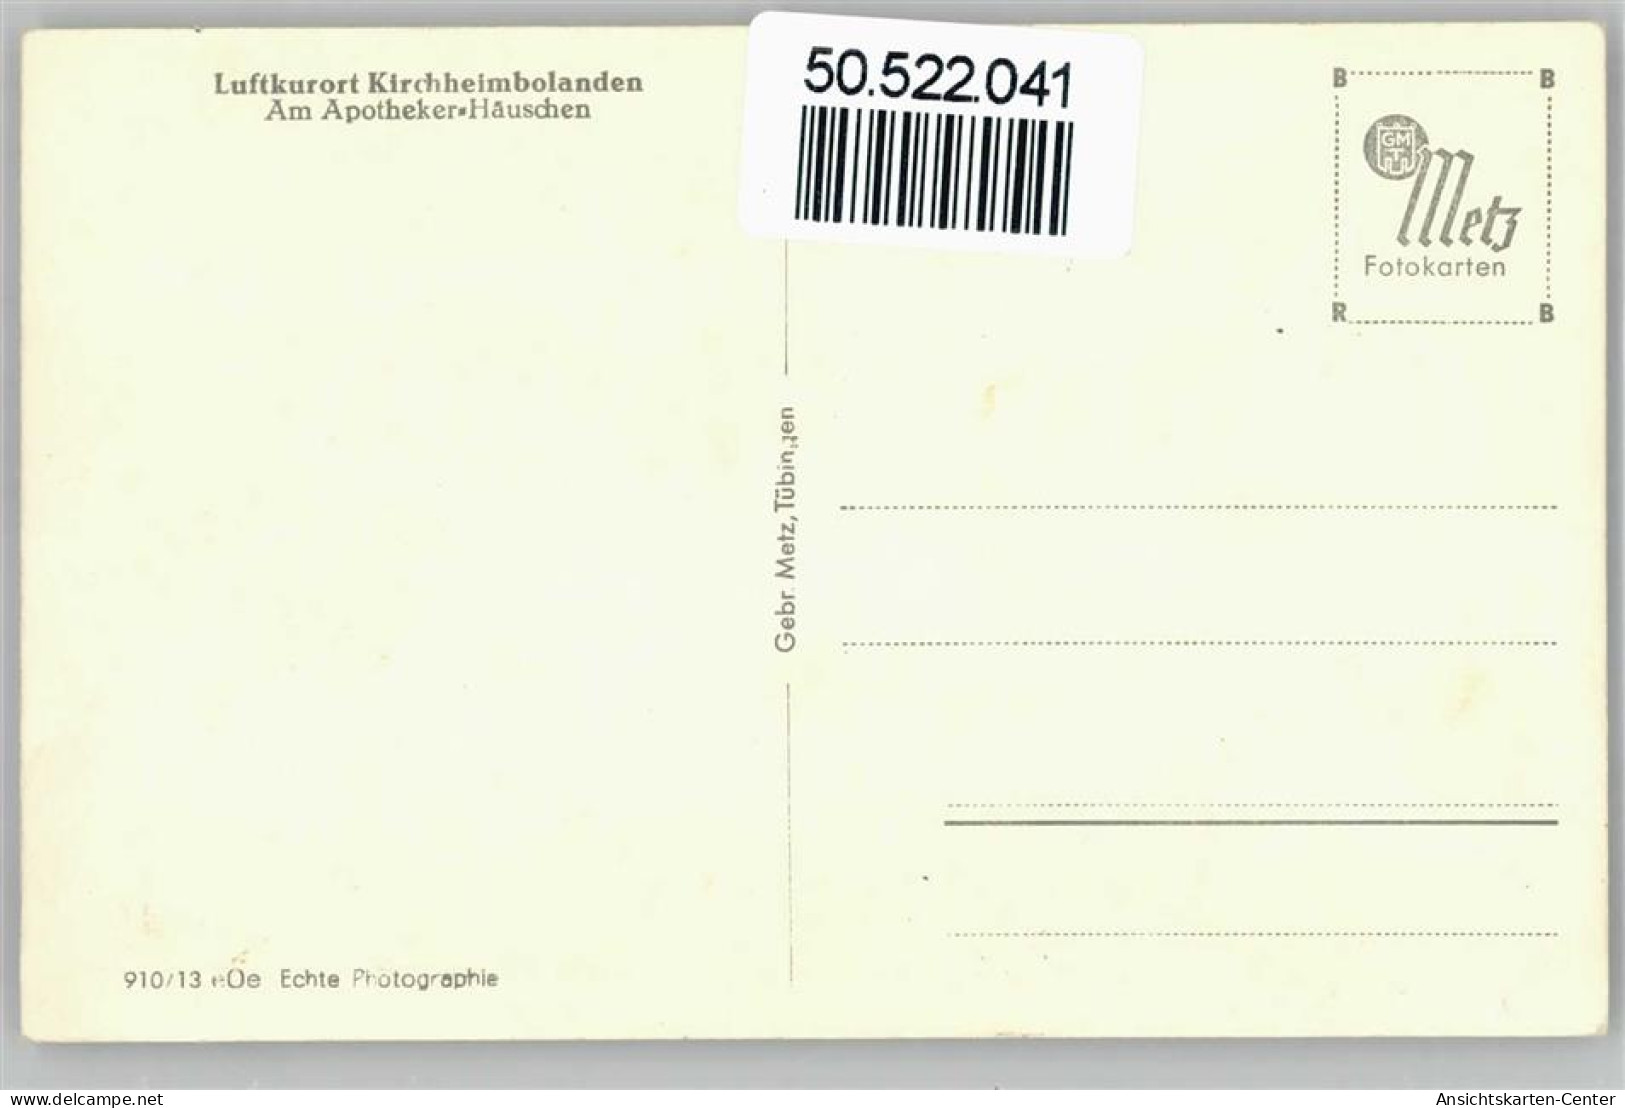 50522041 - Kirchheimbolanden - Kirchheimbolanden